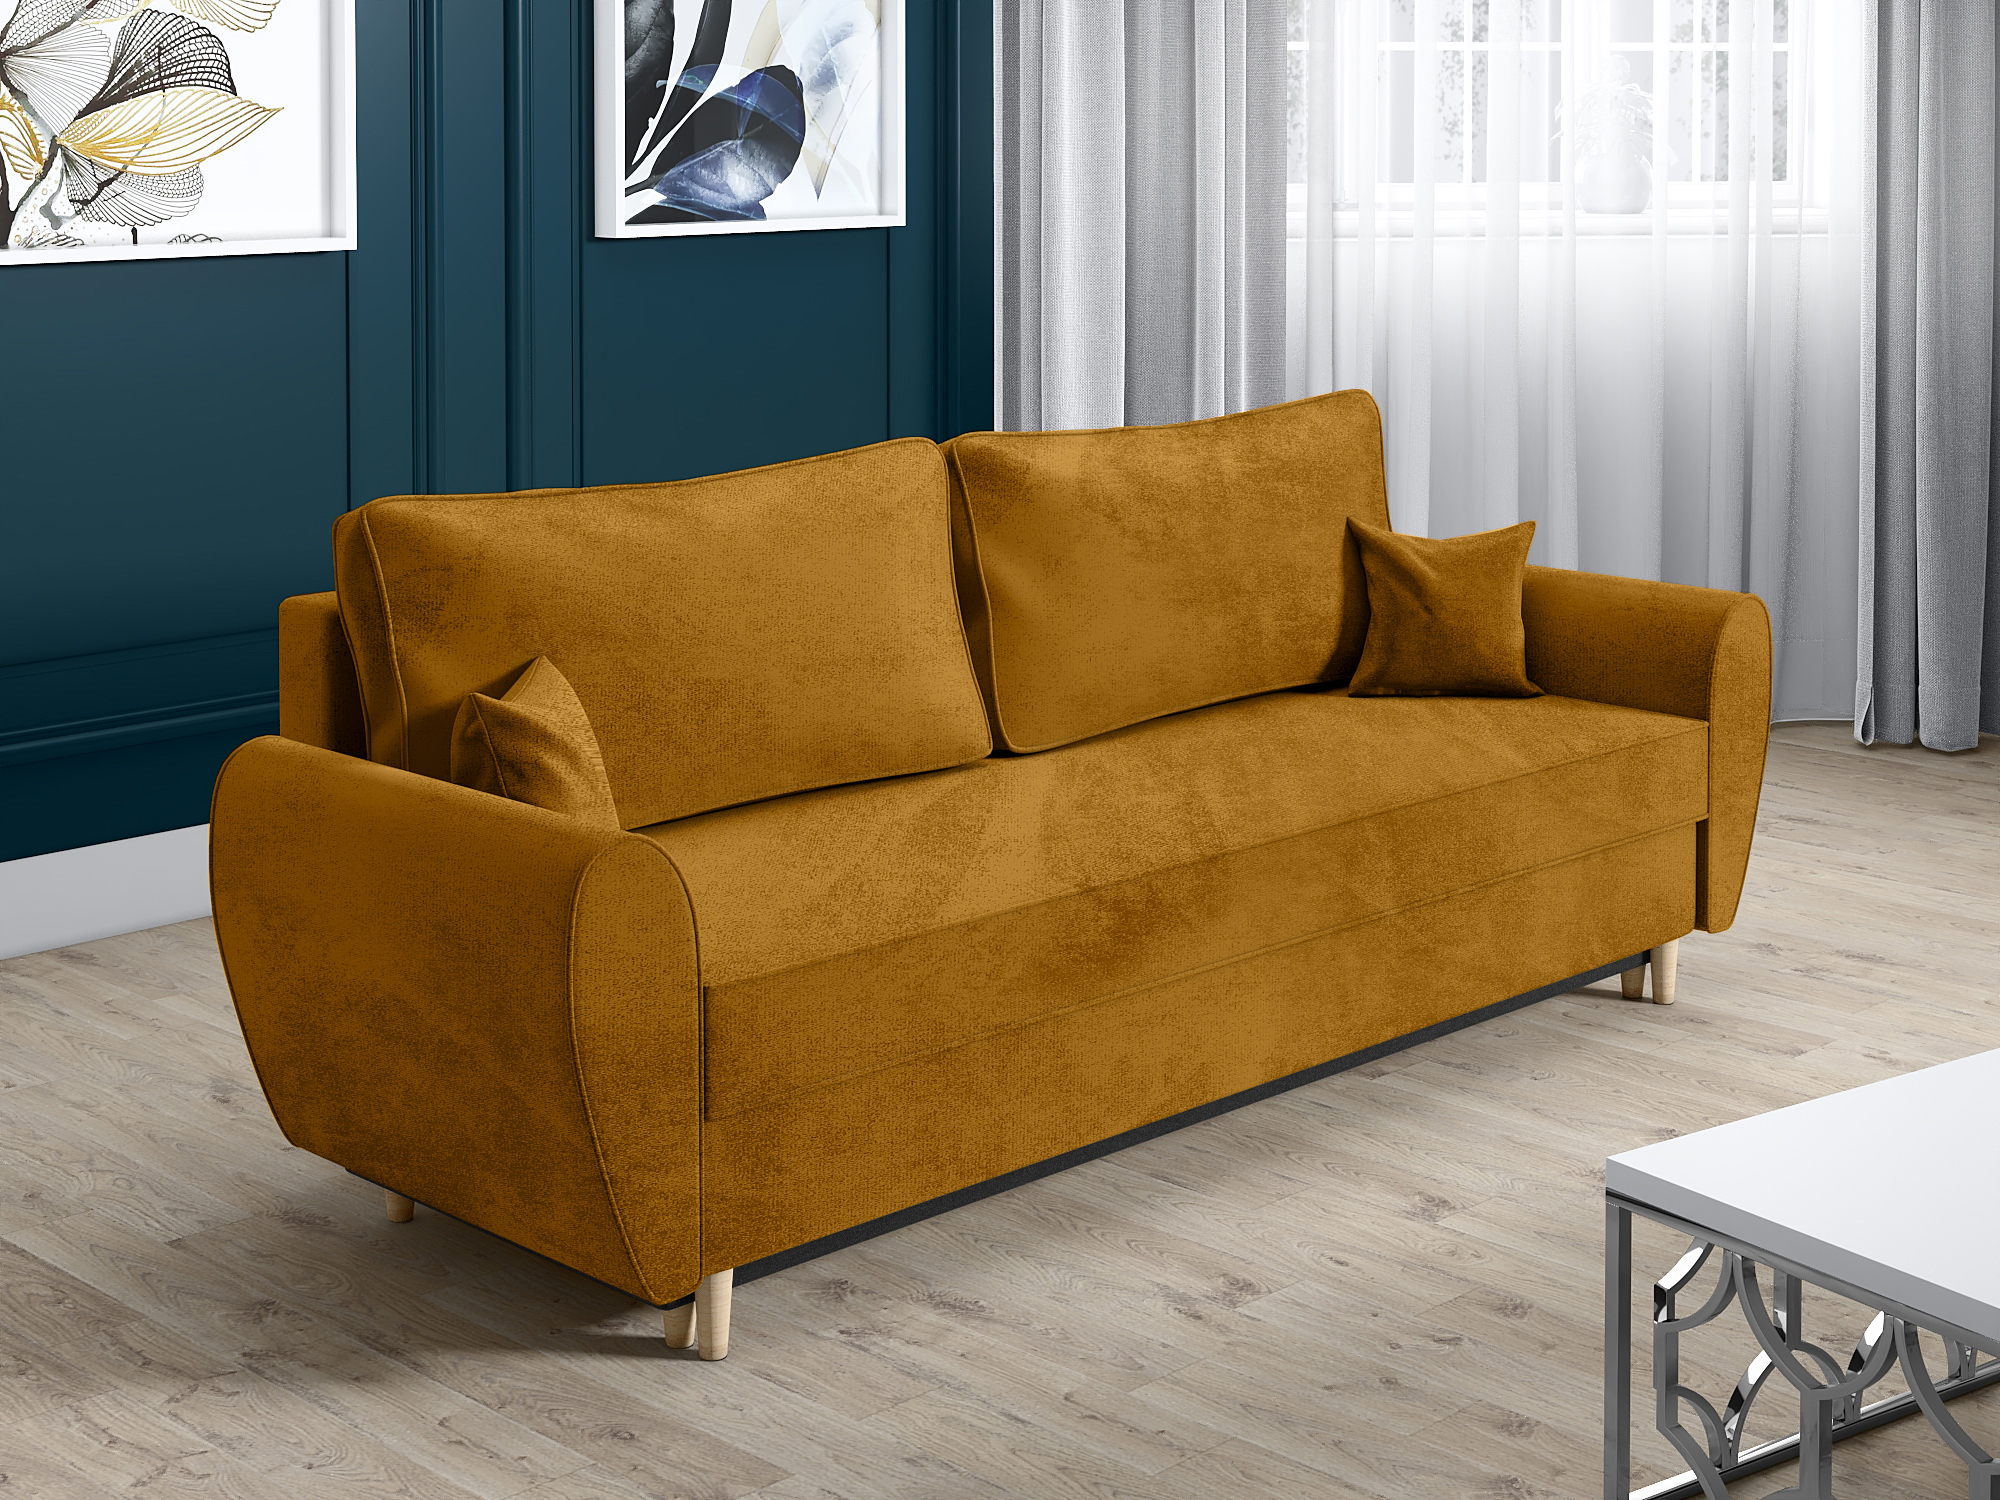 Kanapa trzyosobowa MAX skandynawska sofa z funkcją spania i pojemnikiem na pościel - zdjęcie produktu